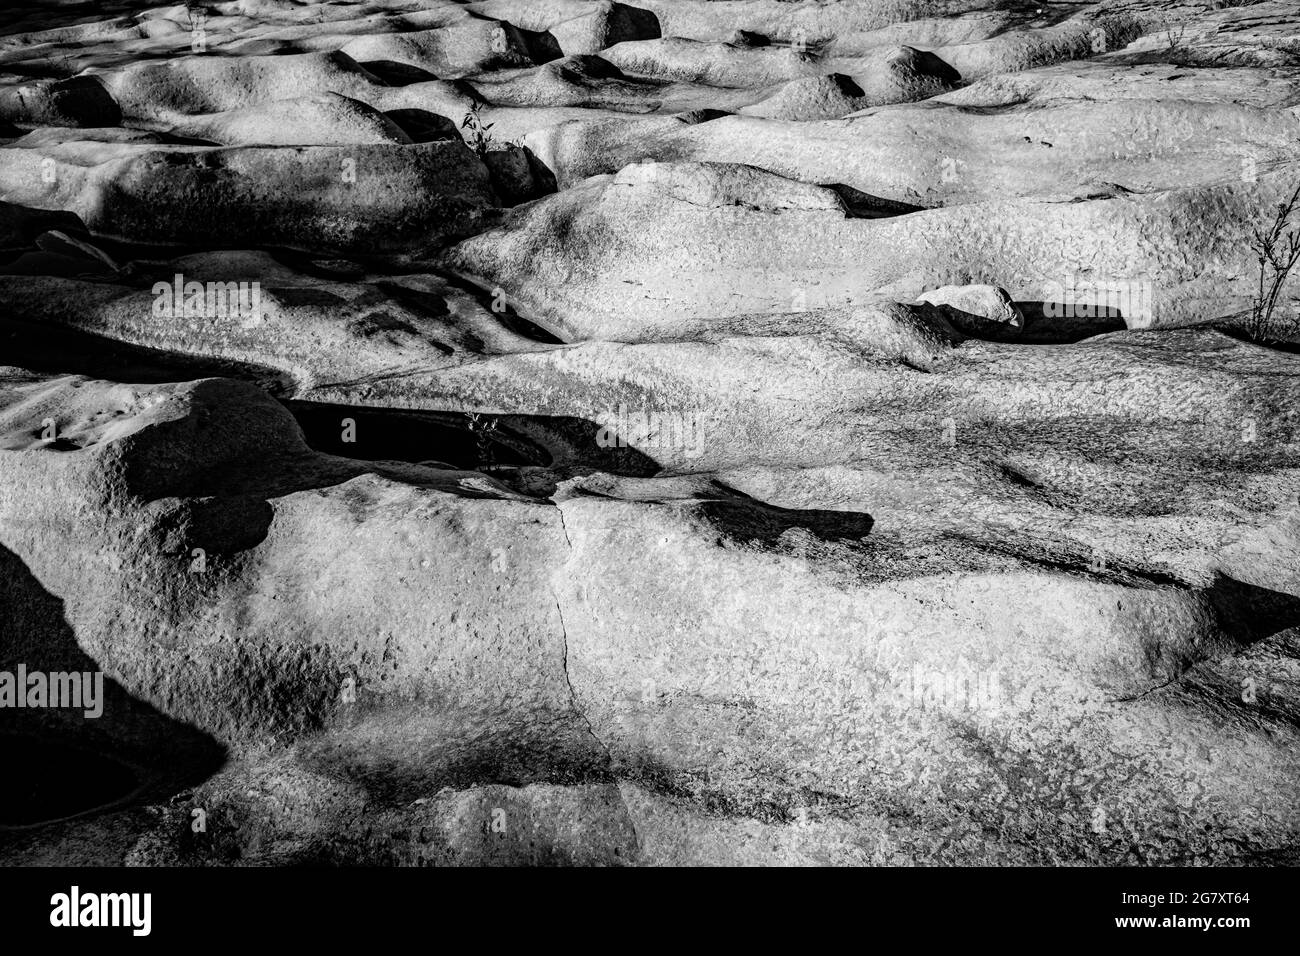 Des ondulations de terrain rocheux sur une photo de montagne en noir et blanc. Banque D'Images